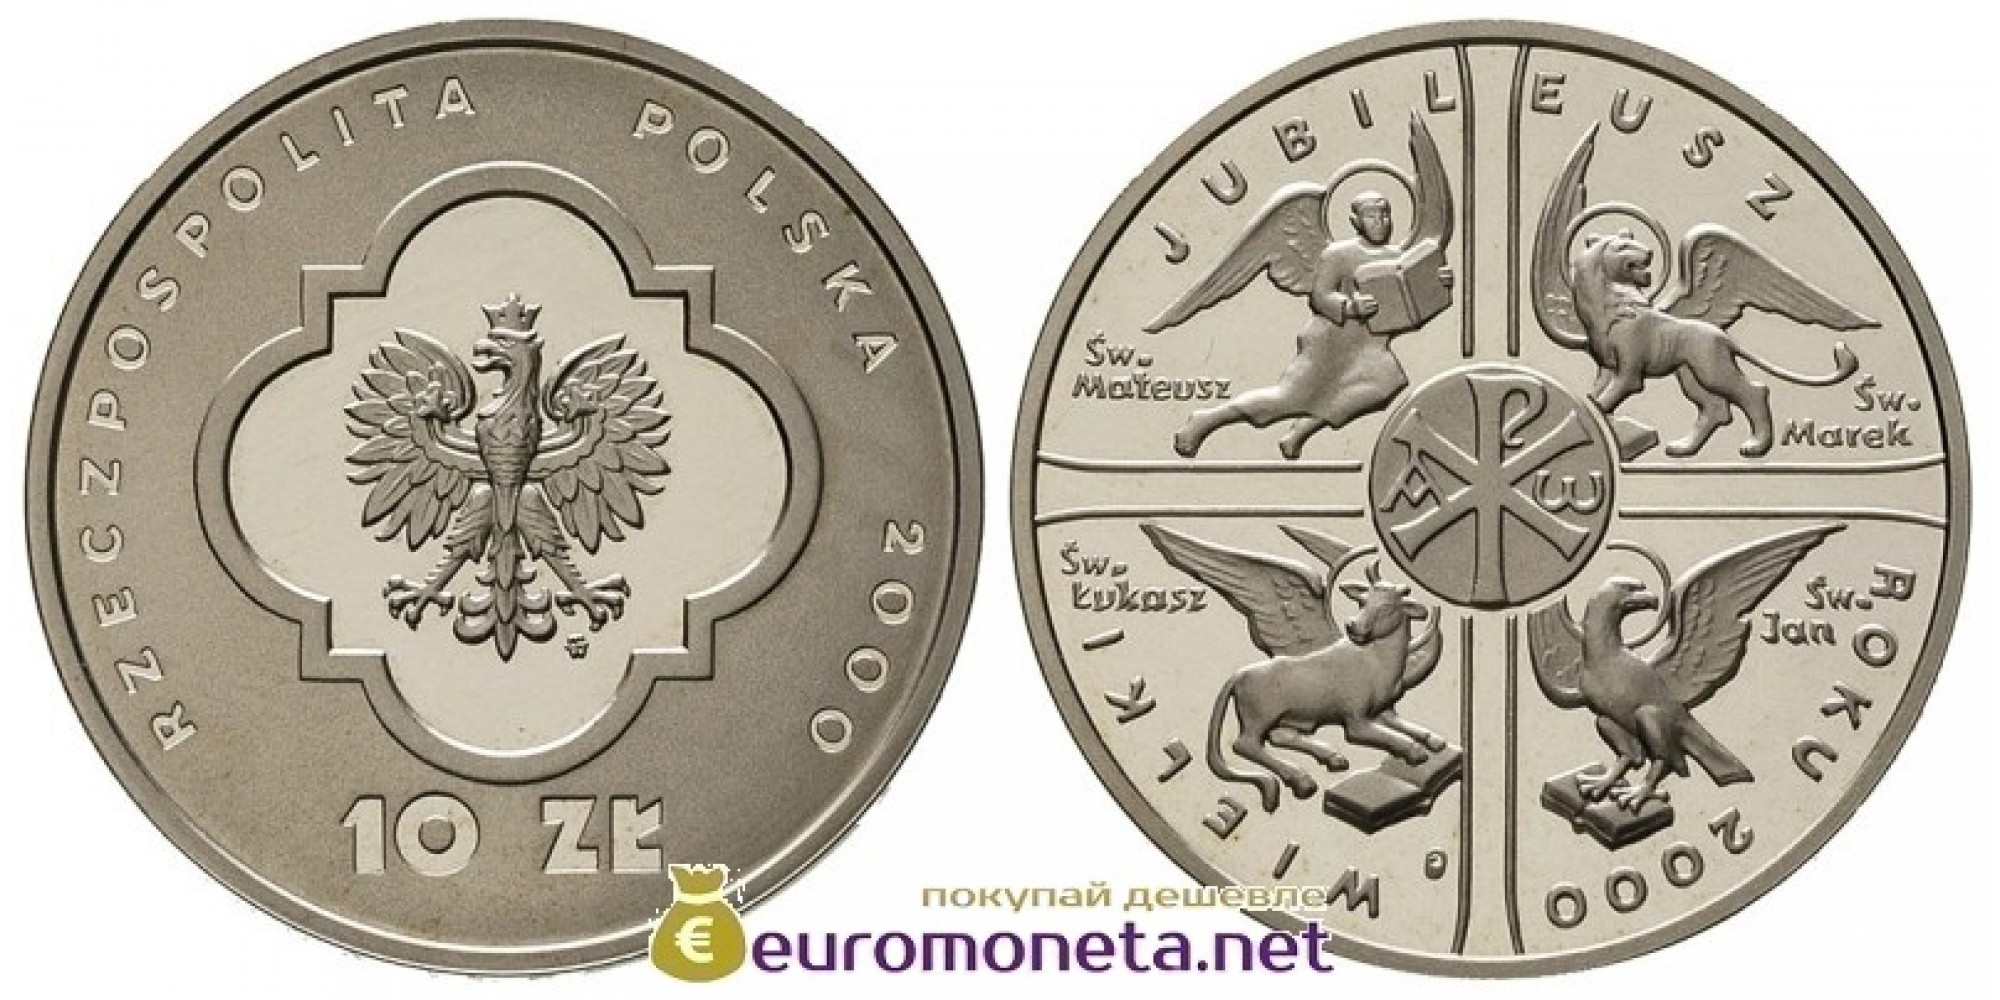 Польша 10 злотых 2000 год Великий Юбилей 2000 года серебро пруф